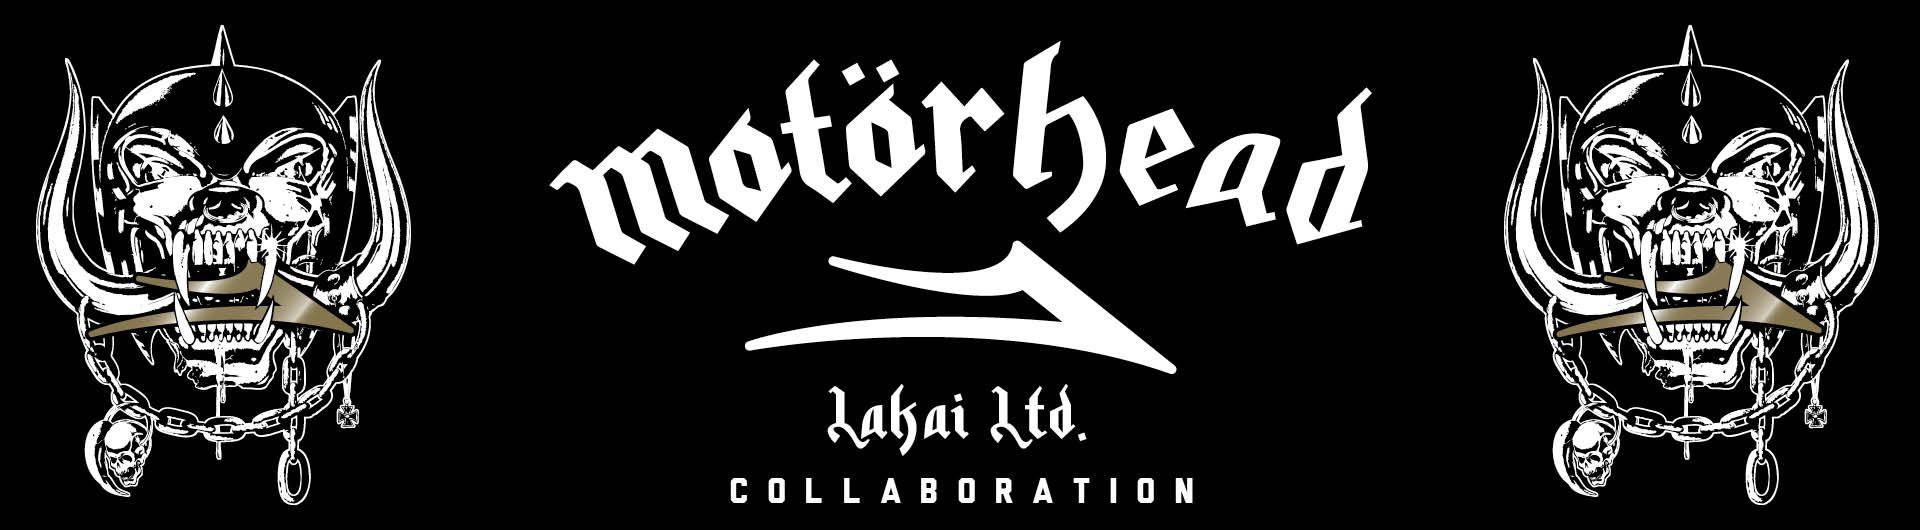 Lakai Skateboard Logo - Shop the Lakai x Motörhead Collaboration